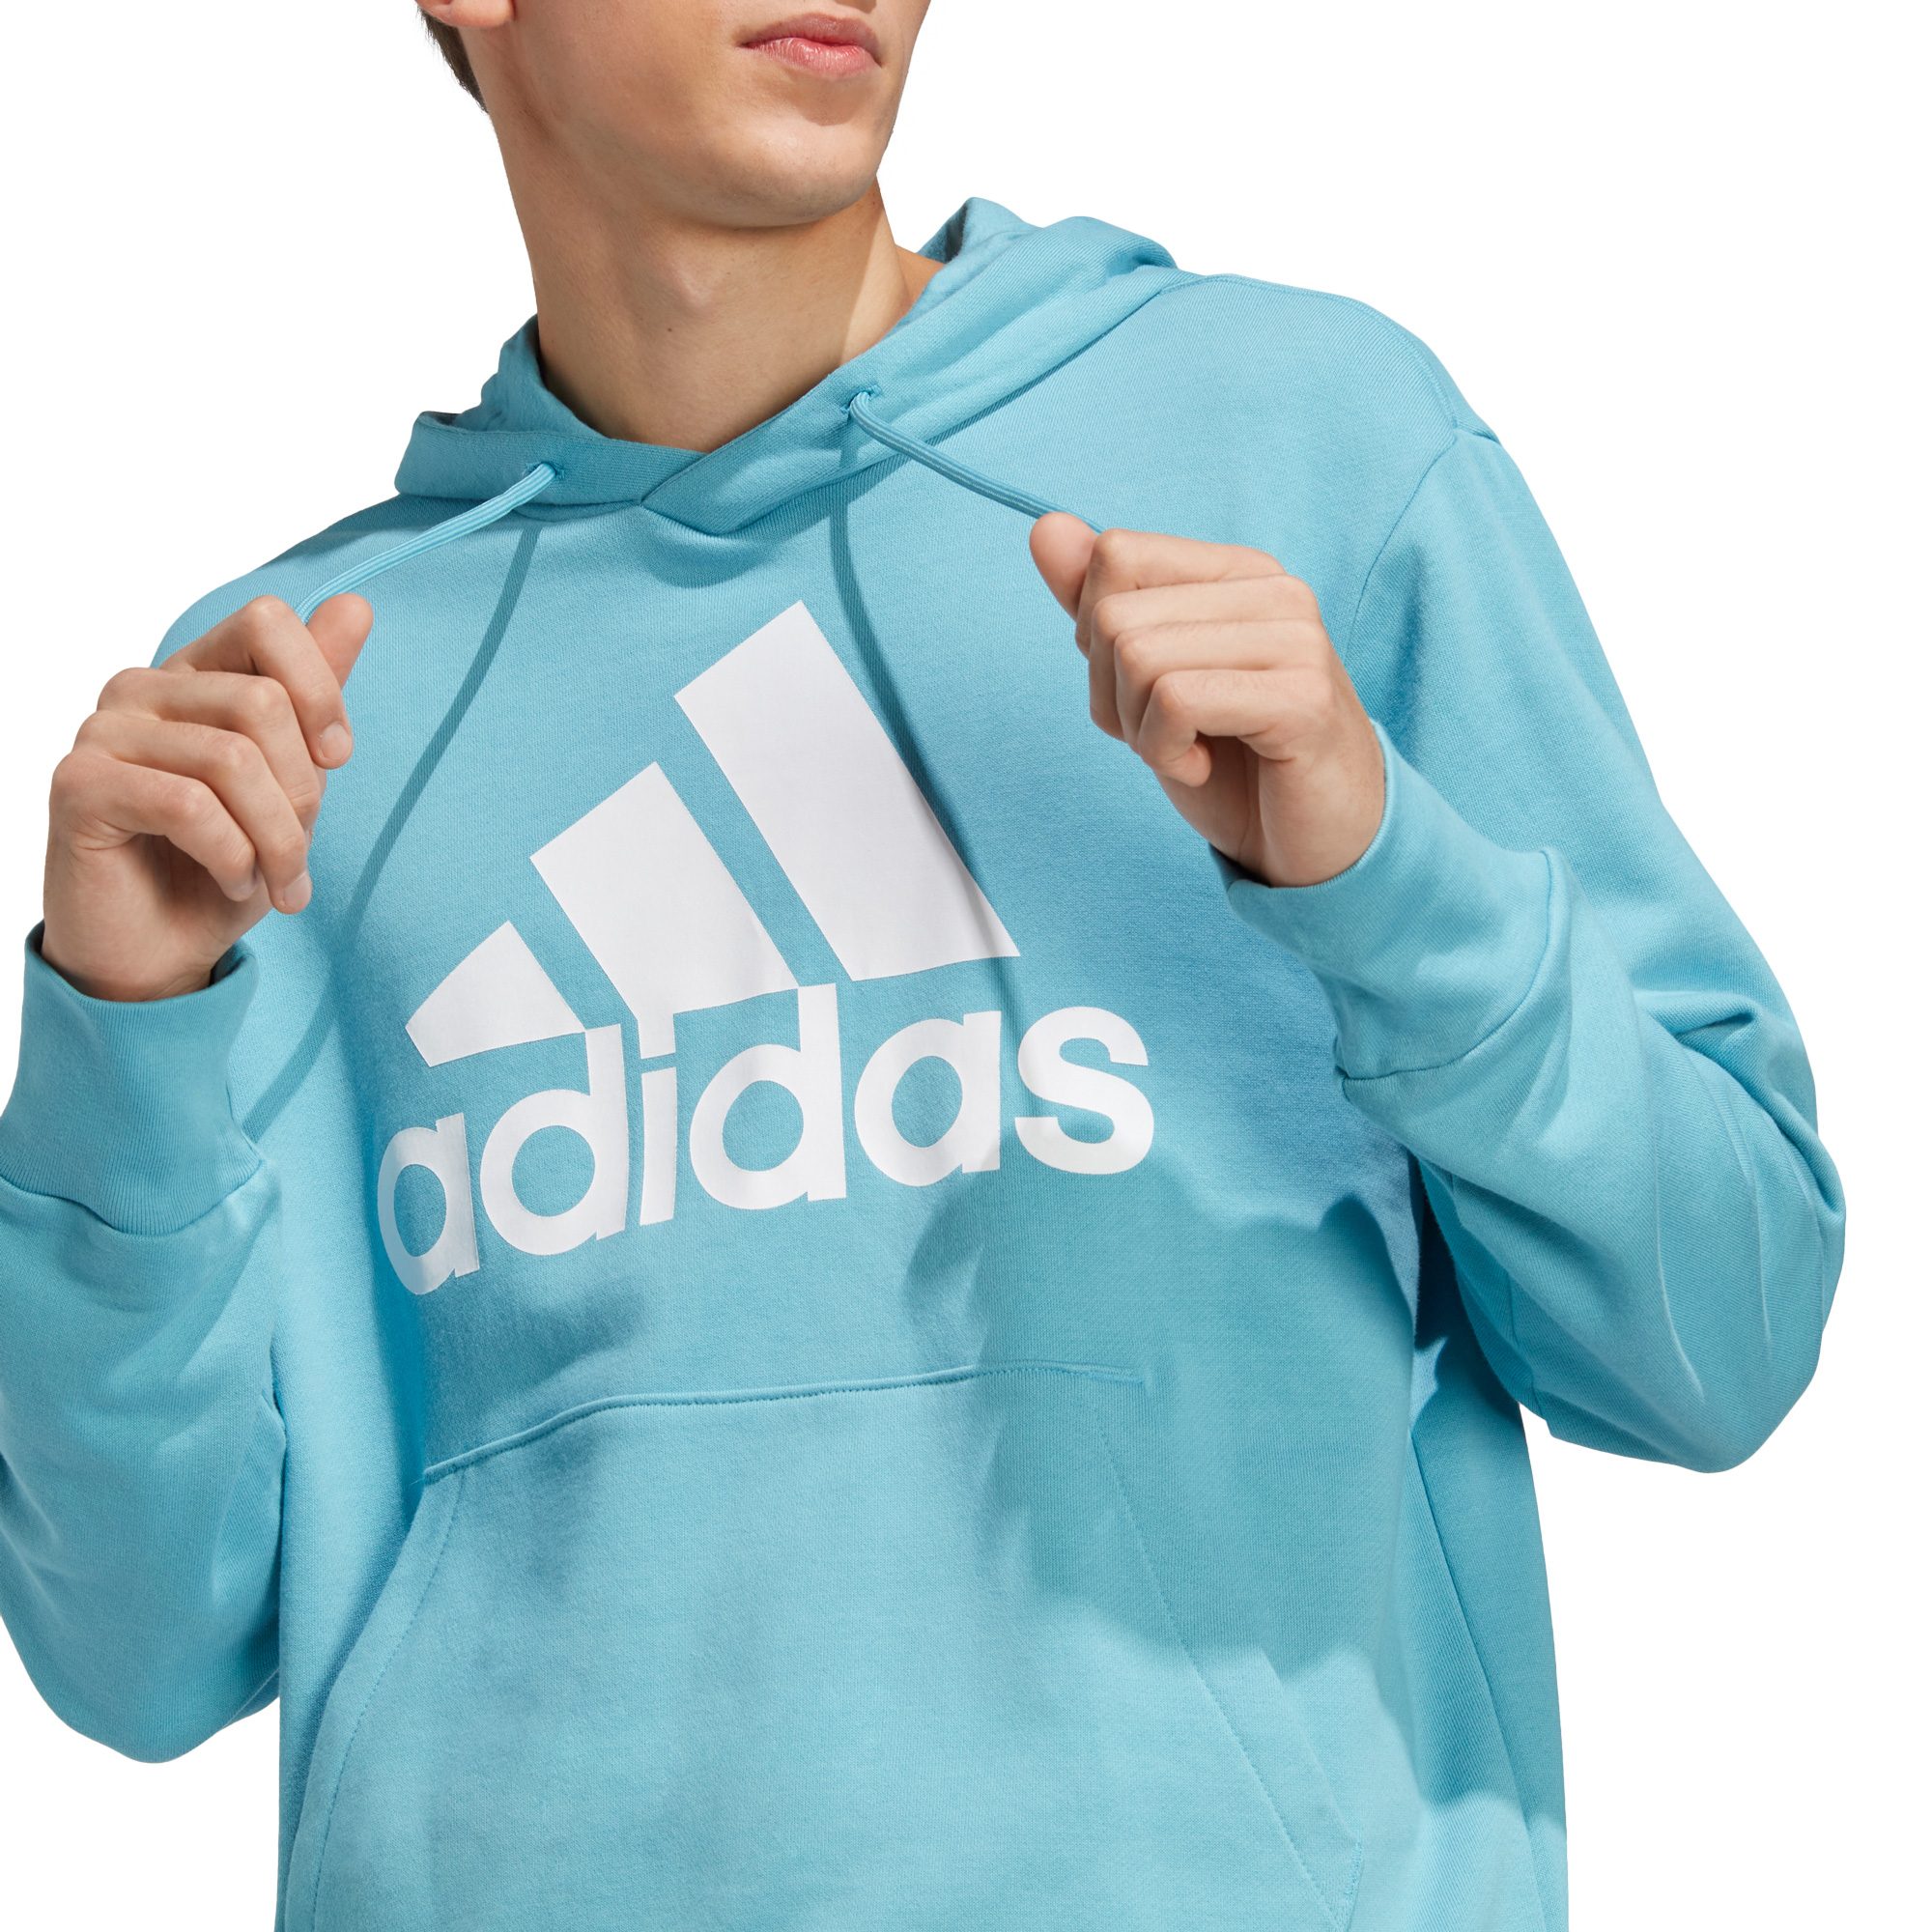 adidas - Essentials French Terry Big Logo Hoodie Herren preloved blue  kaufen im Sport Bittl Shop